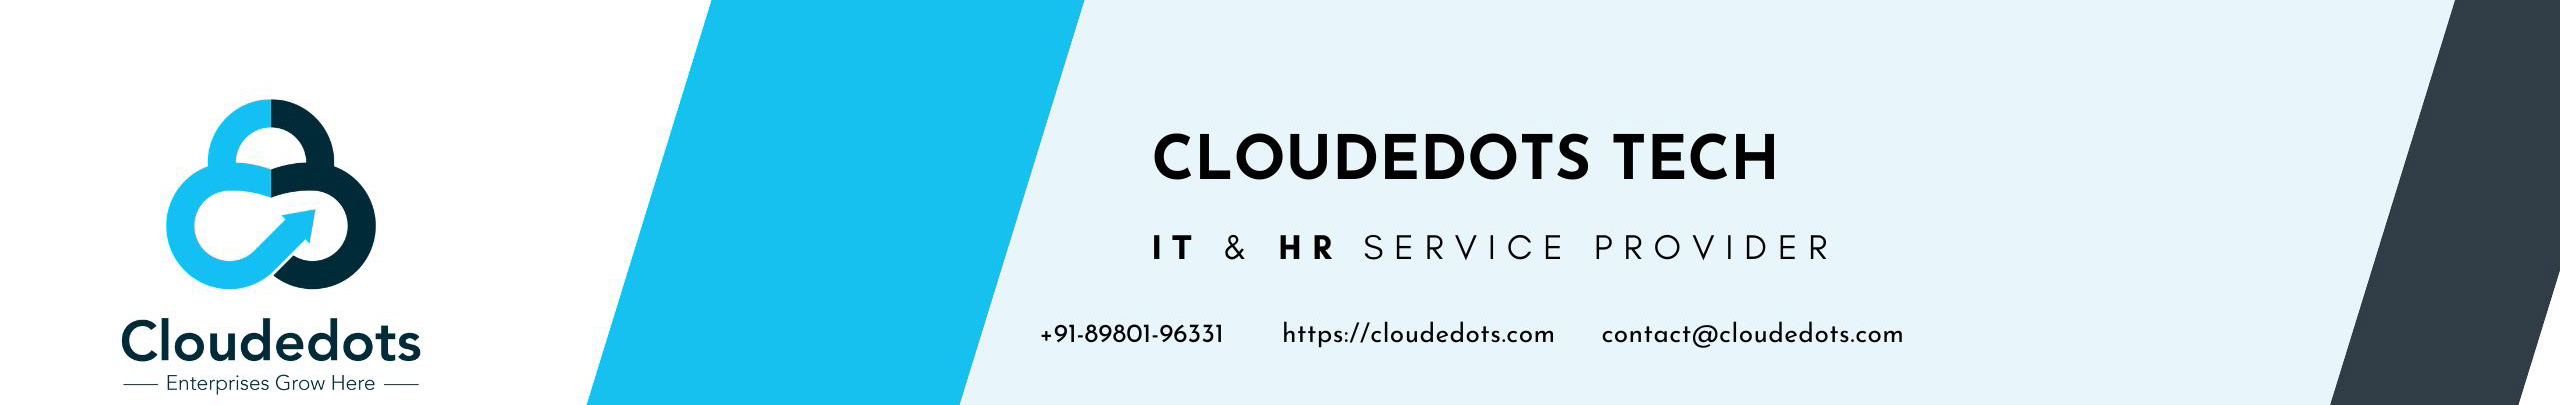 Cloudedots Tech's profile banner